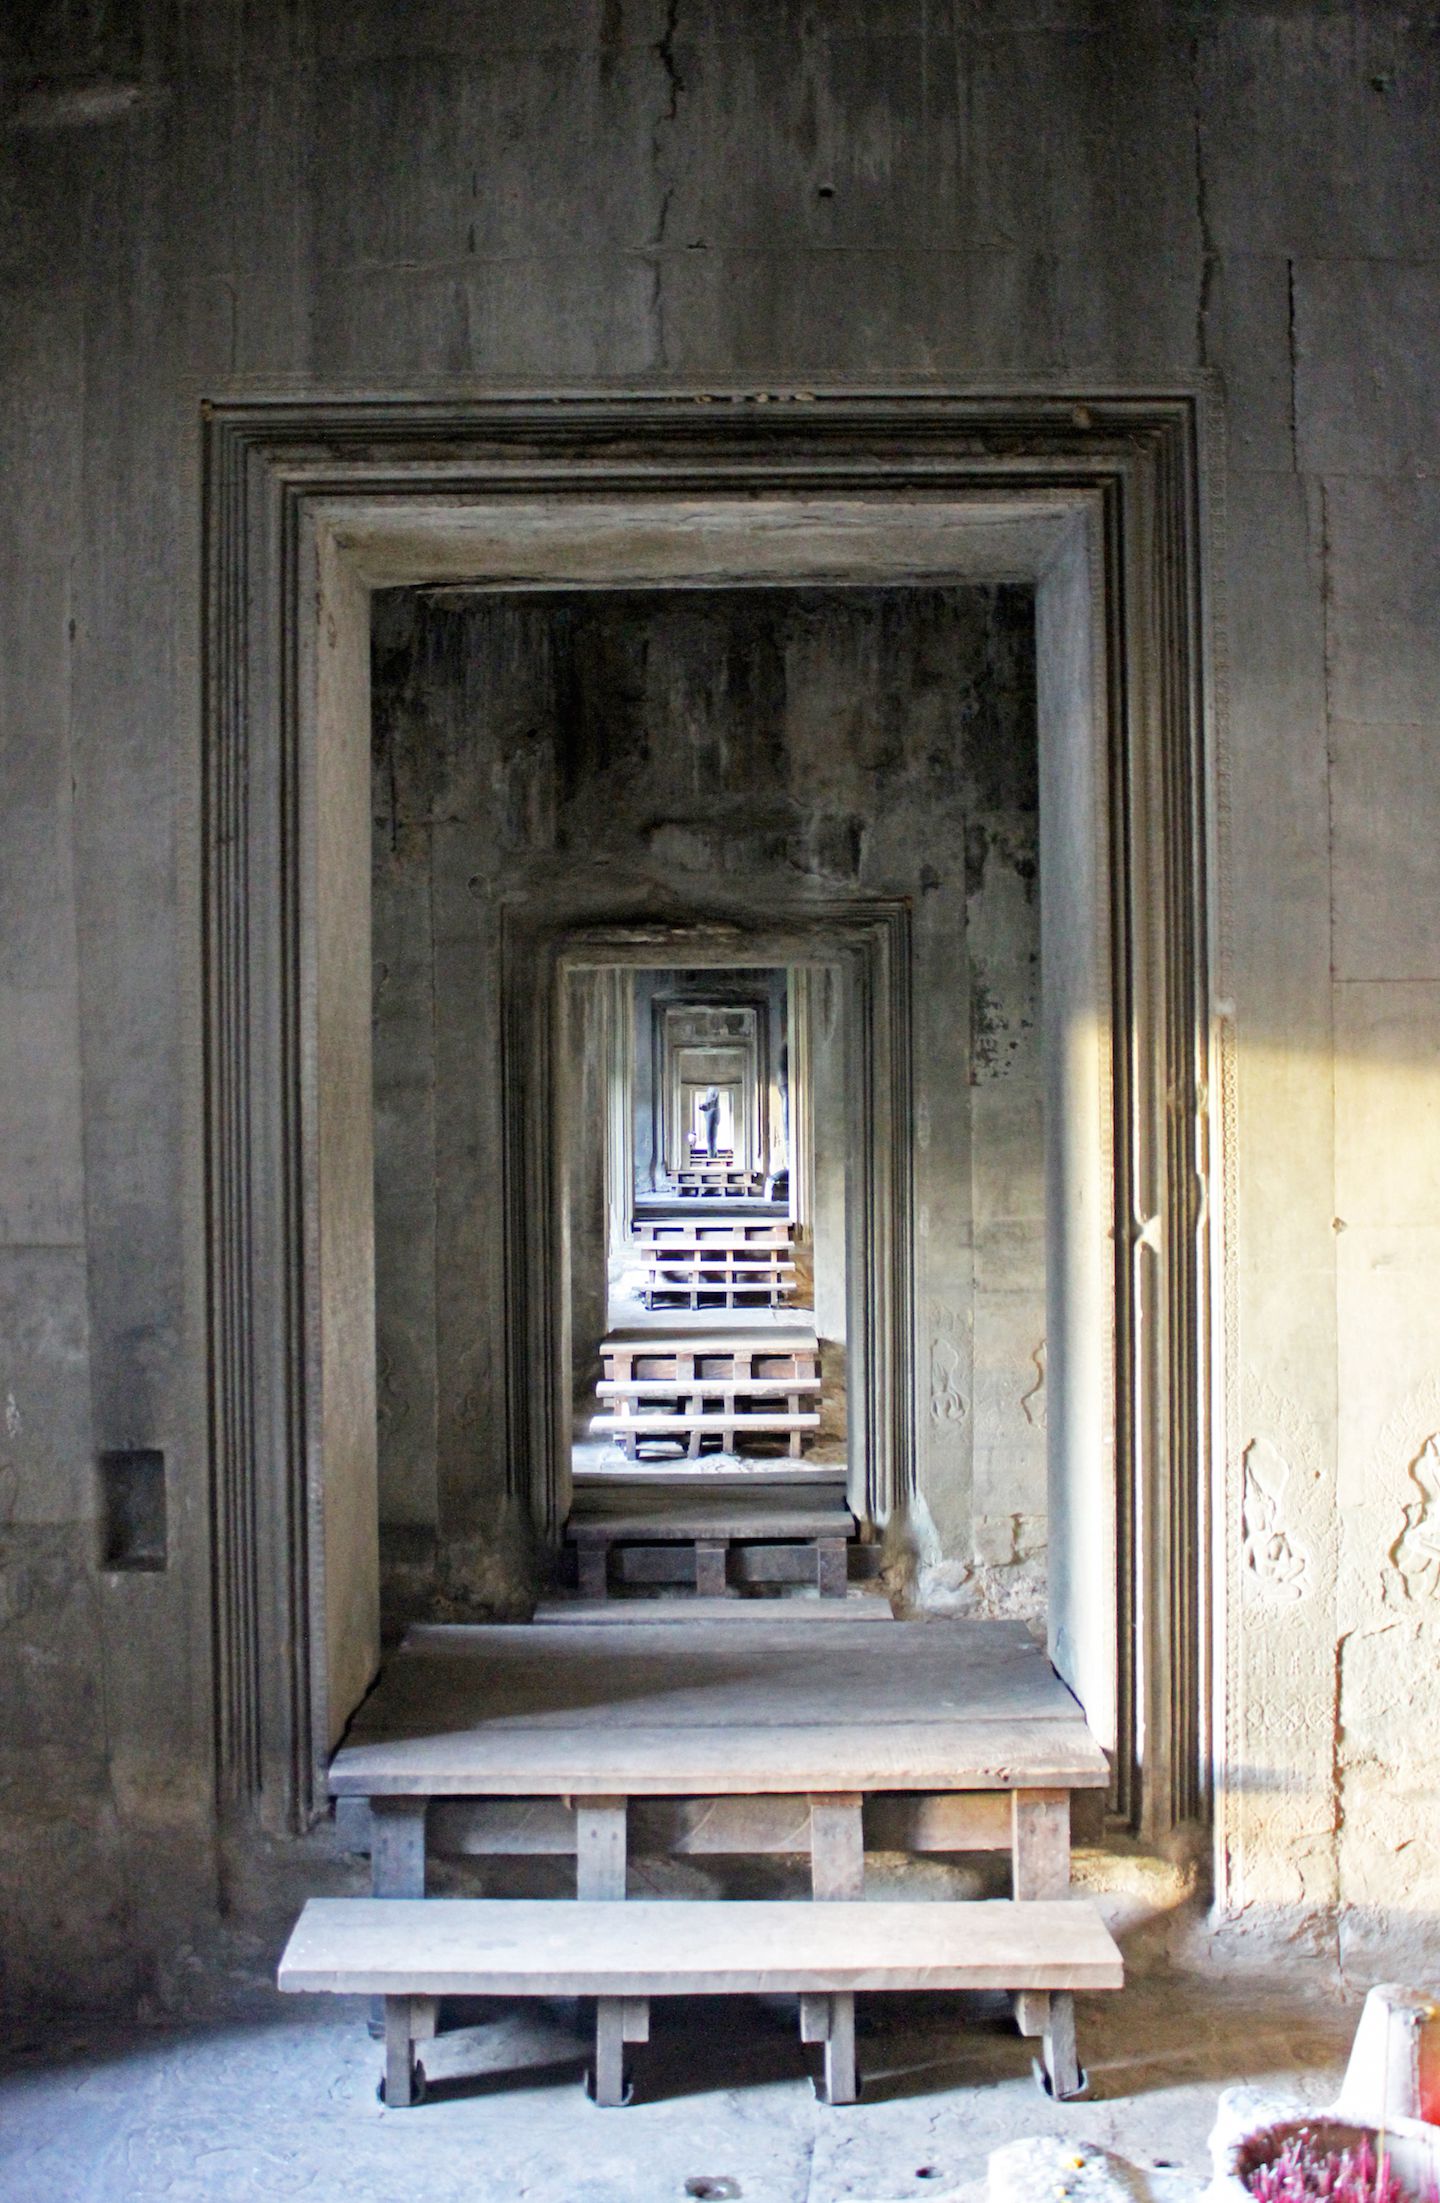 Corridors at the entrance of Angkor Wat